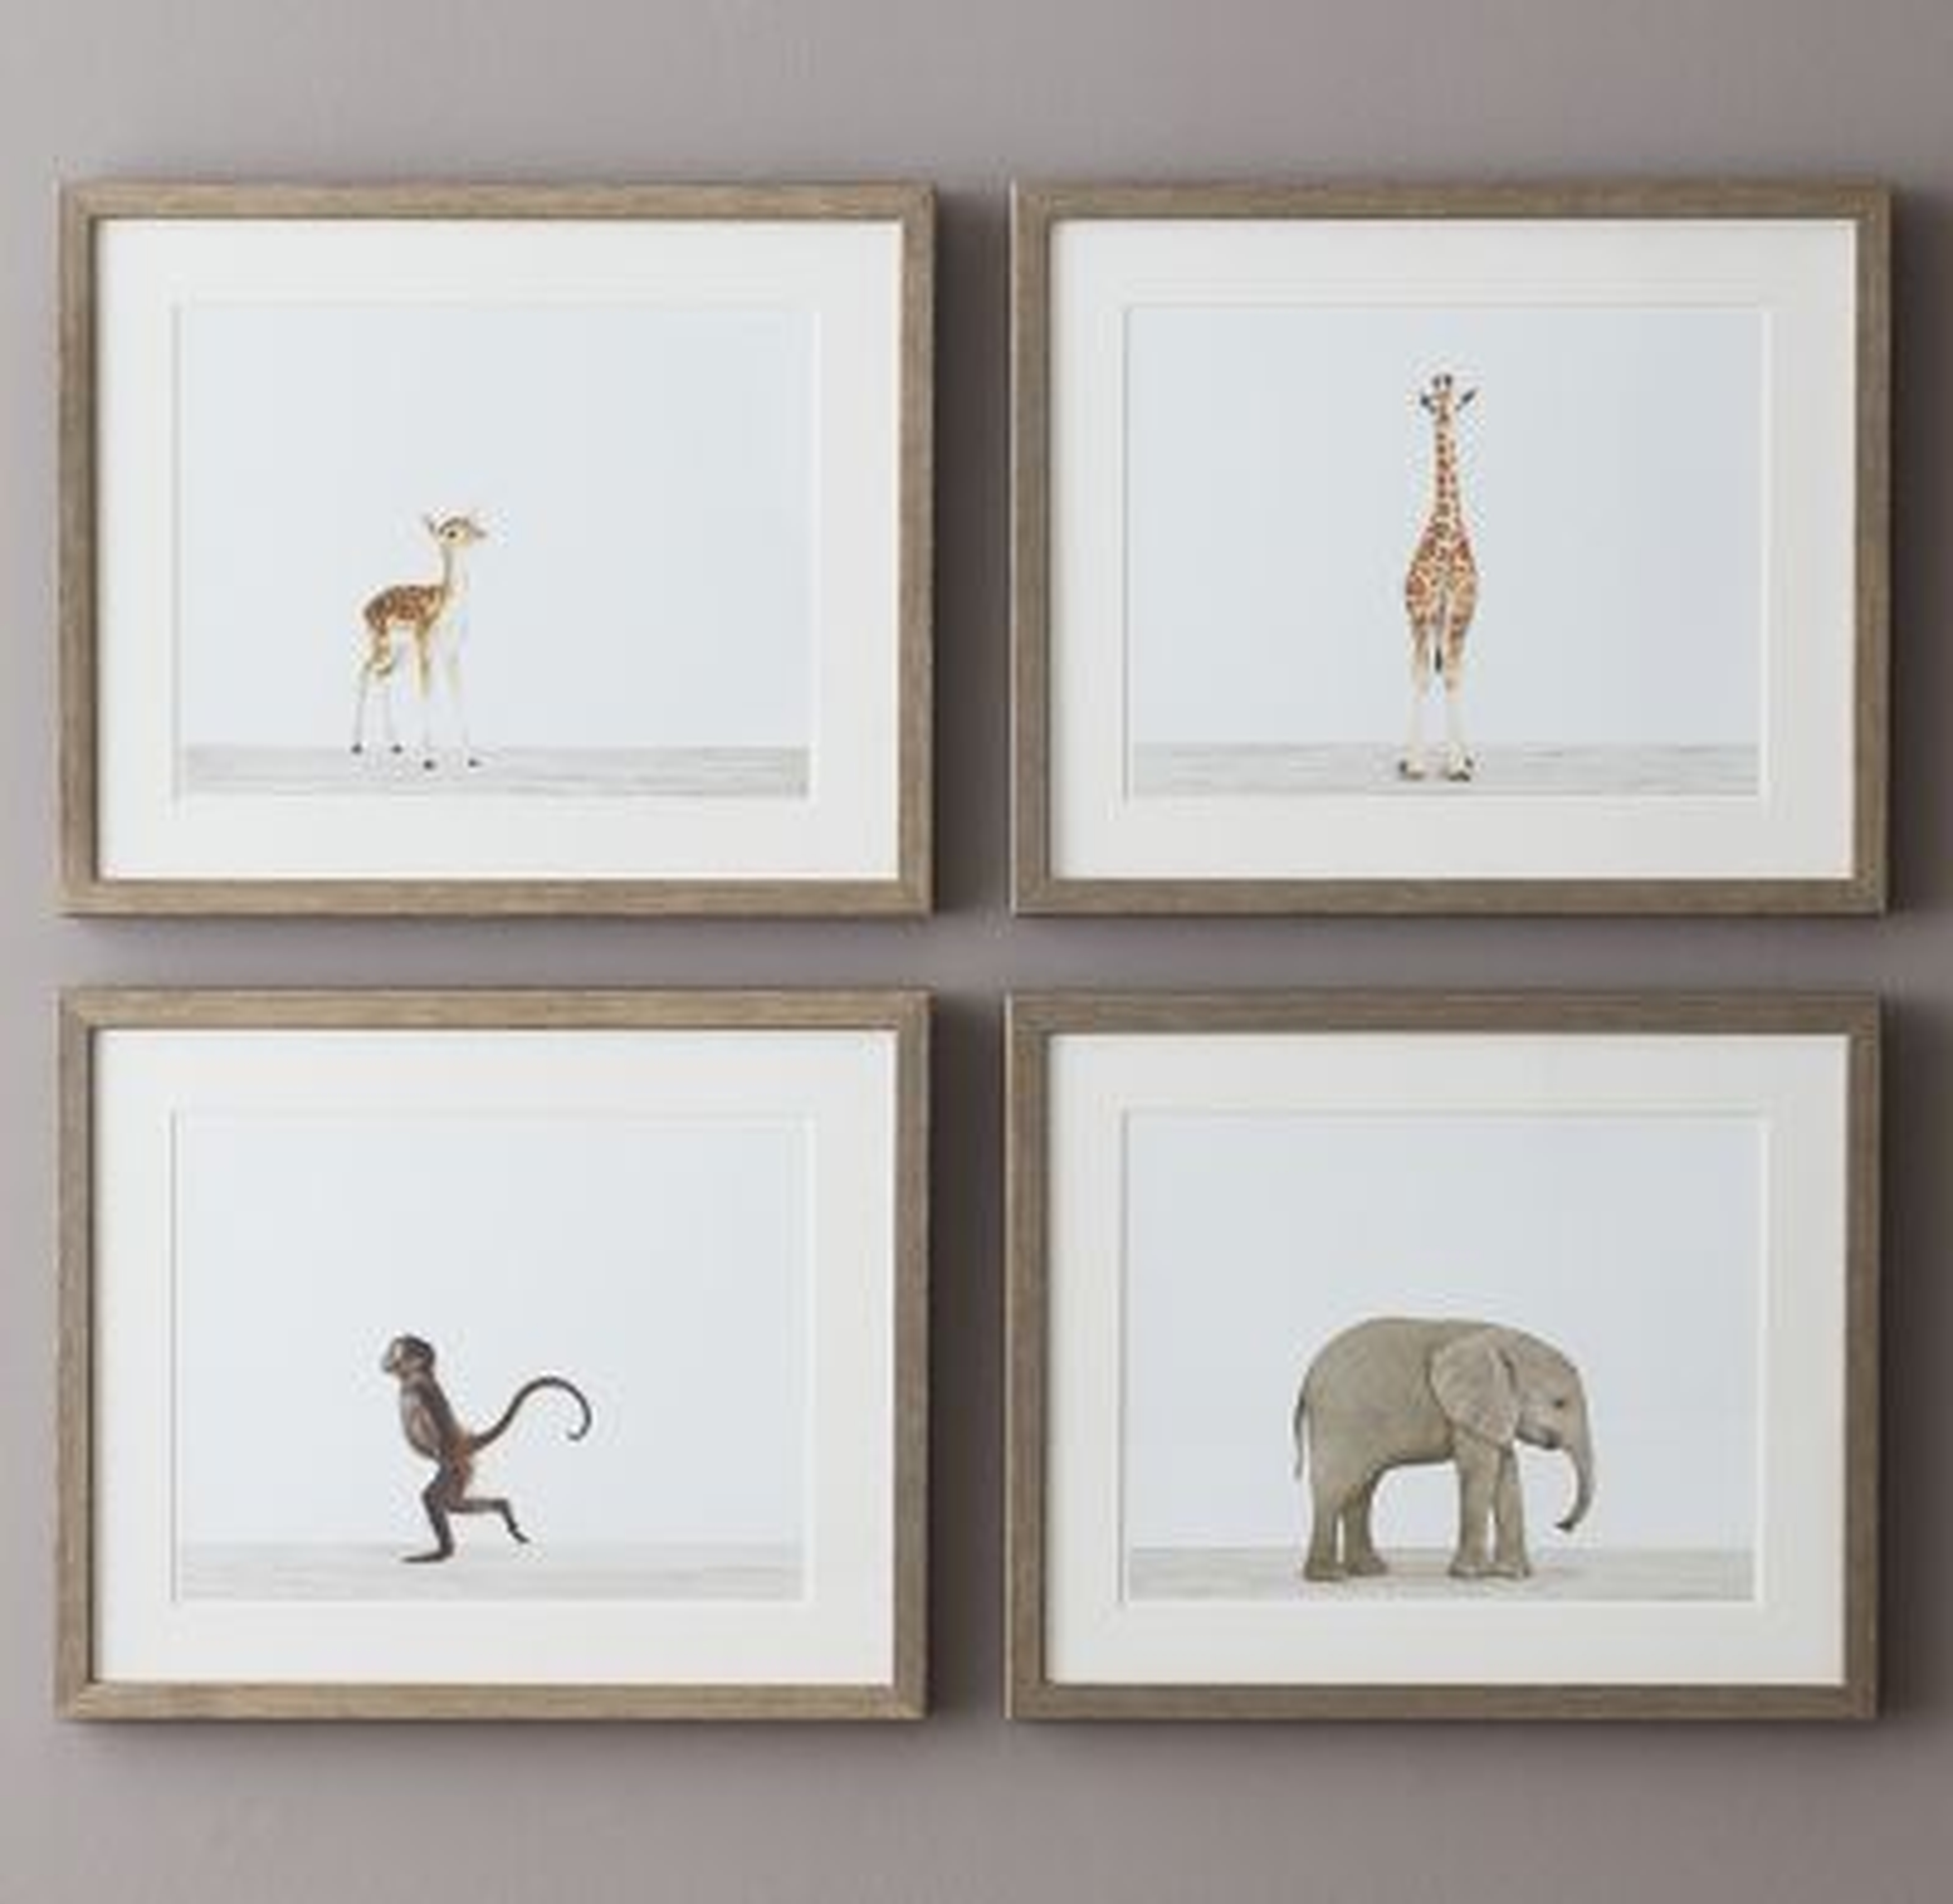 Baby Animal Portrait - Giraffe - 16" x 13" - Framed - RH Baby & Child